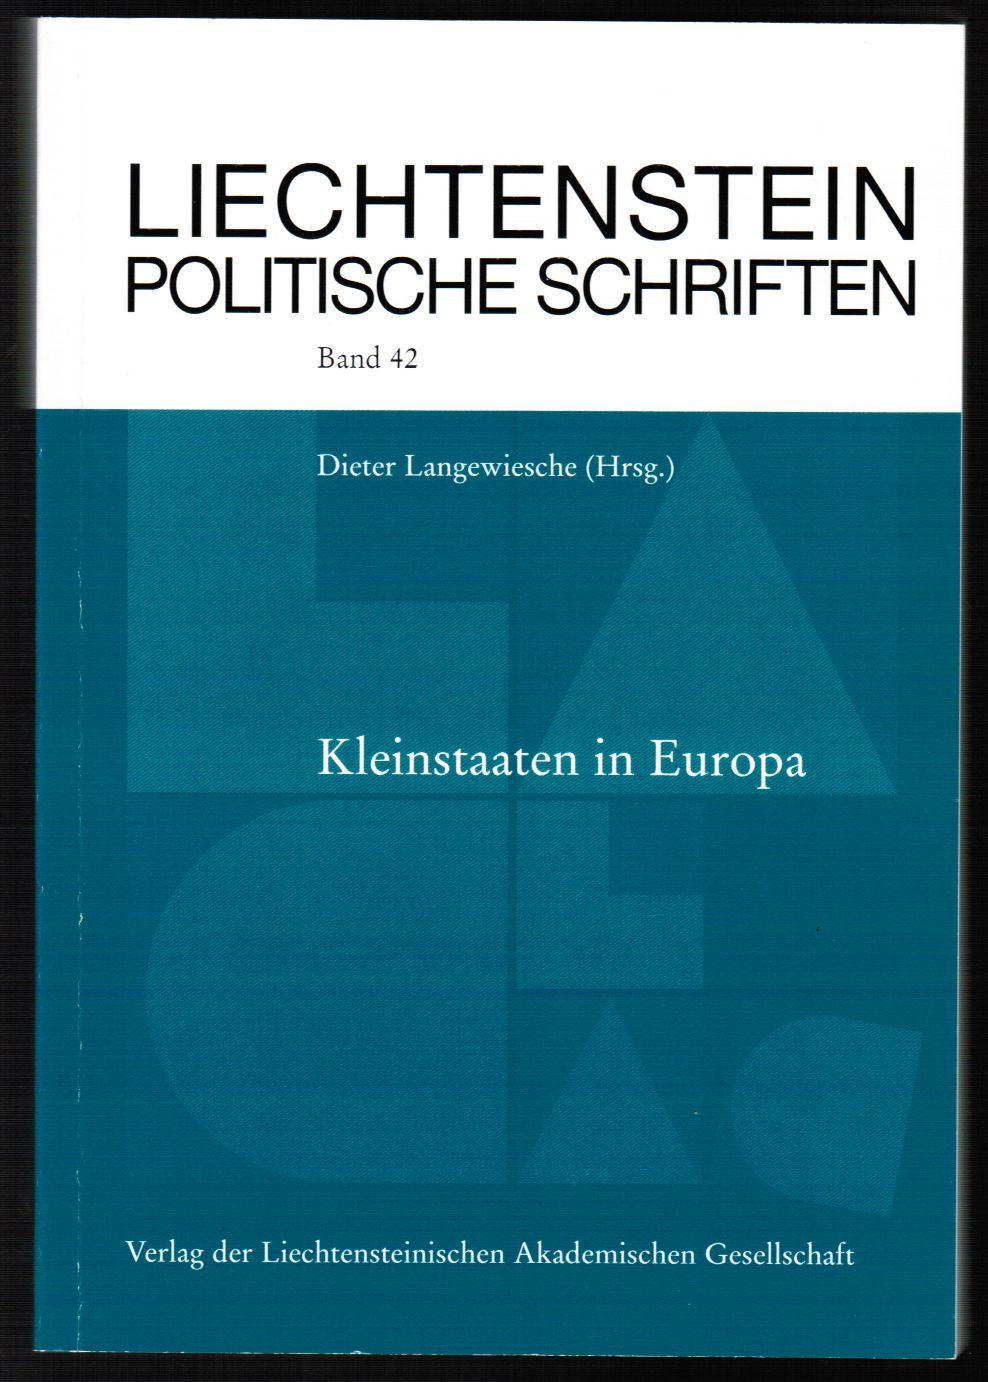 Kleinstaaten in Europa. Symposium am Liechtenstein-Institut zum Jubiläum. 200 Jahre Souveränität Fürstentum Liechtenstein 1806-2006. - Langewiesche, Dieter (Hrsg.)